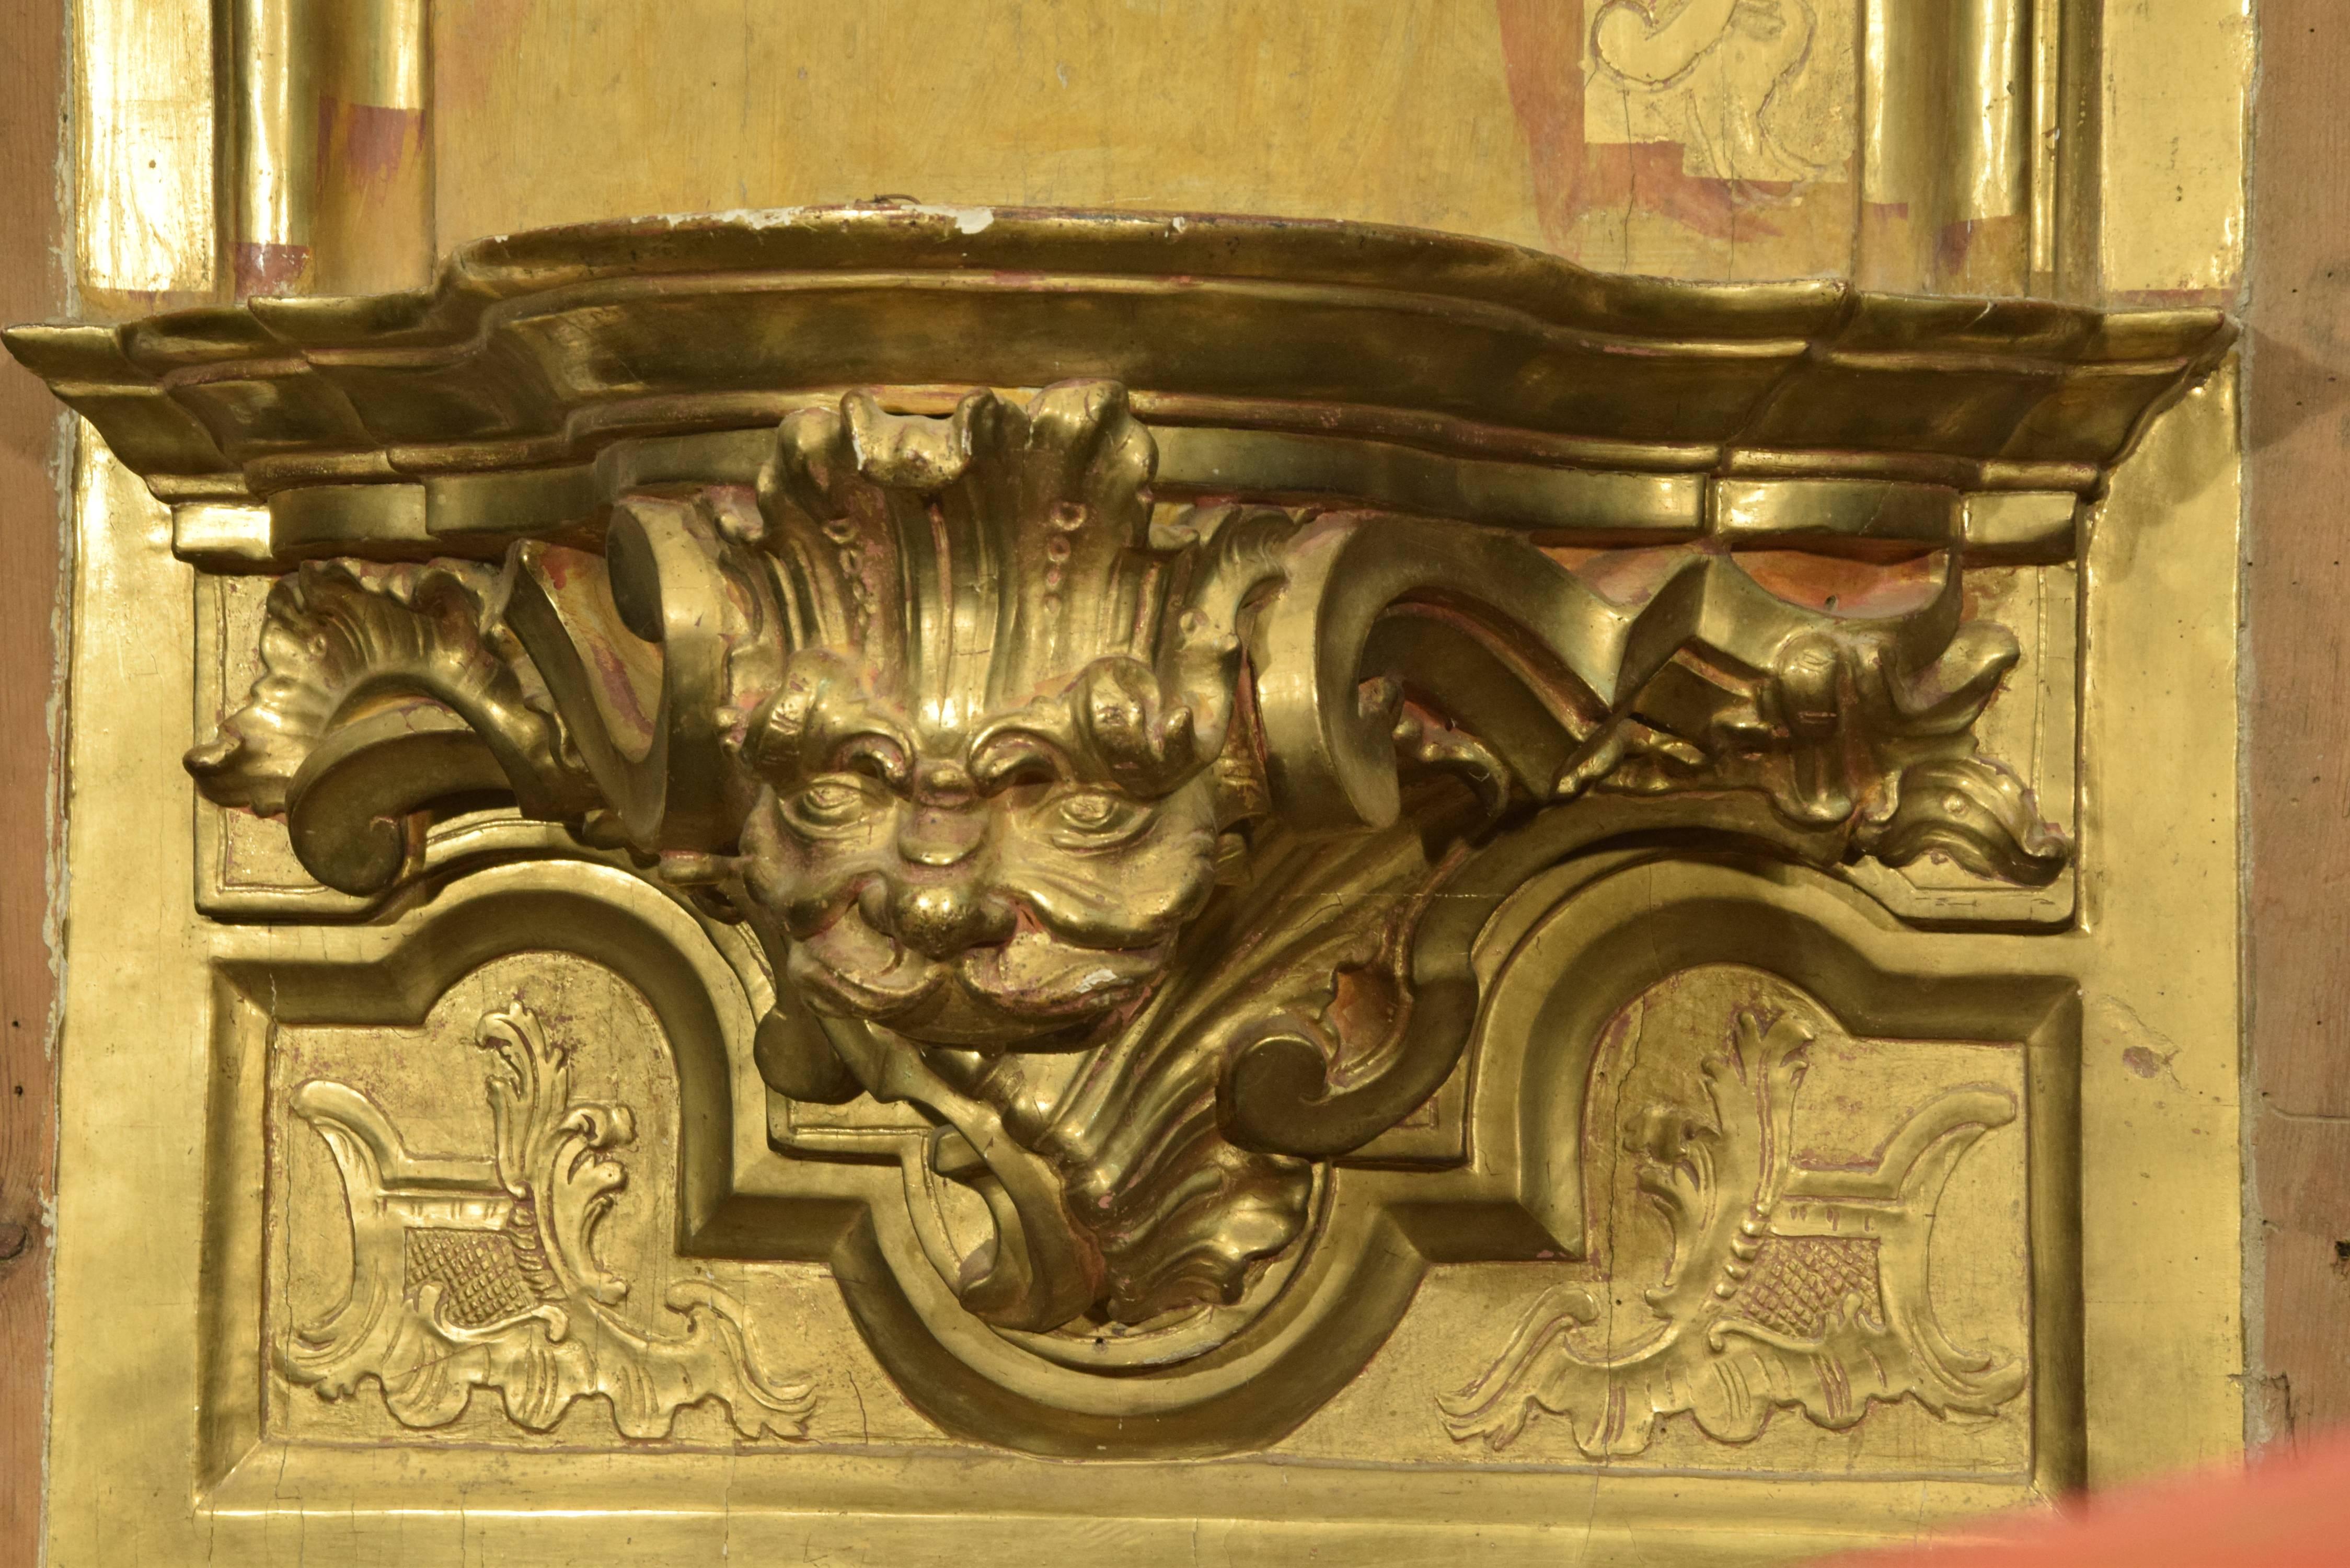 Hornacina, bestehend aus einer mit Leisten verzierten Rückwand und einem Träger für eine mit Masken- und Pflanzenmotiven verzierte Skulptur, die von einem geteilten Giebel mit einem zentralen, an ein Tuch erinnernden Motiv gekrönt wird. Auf der